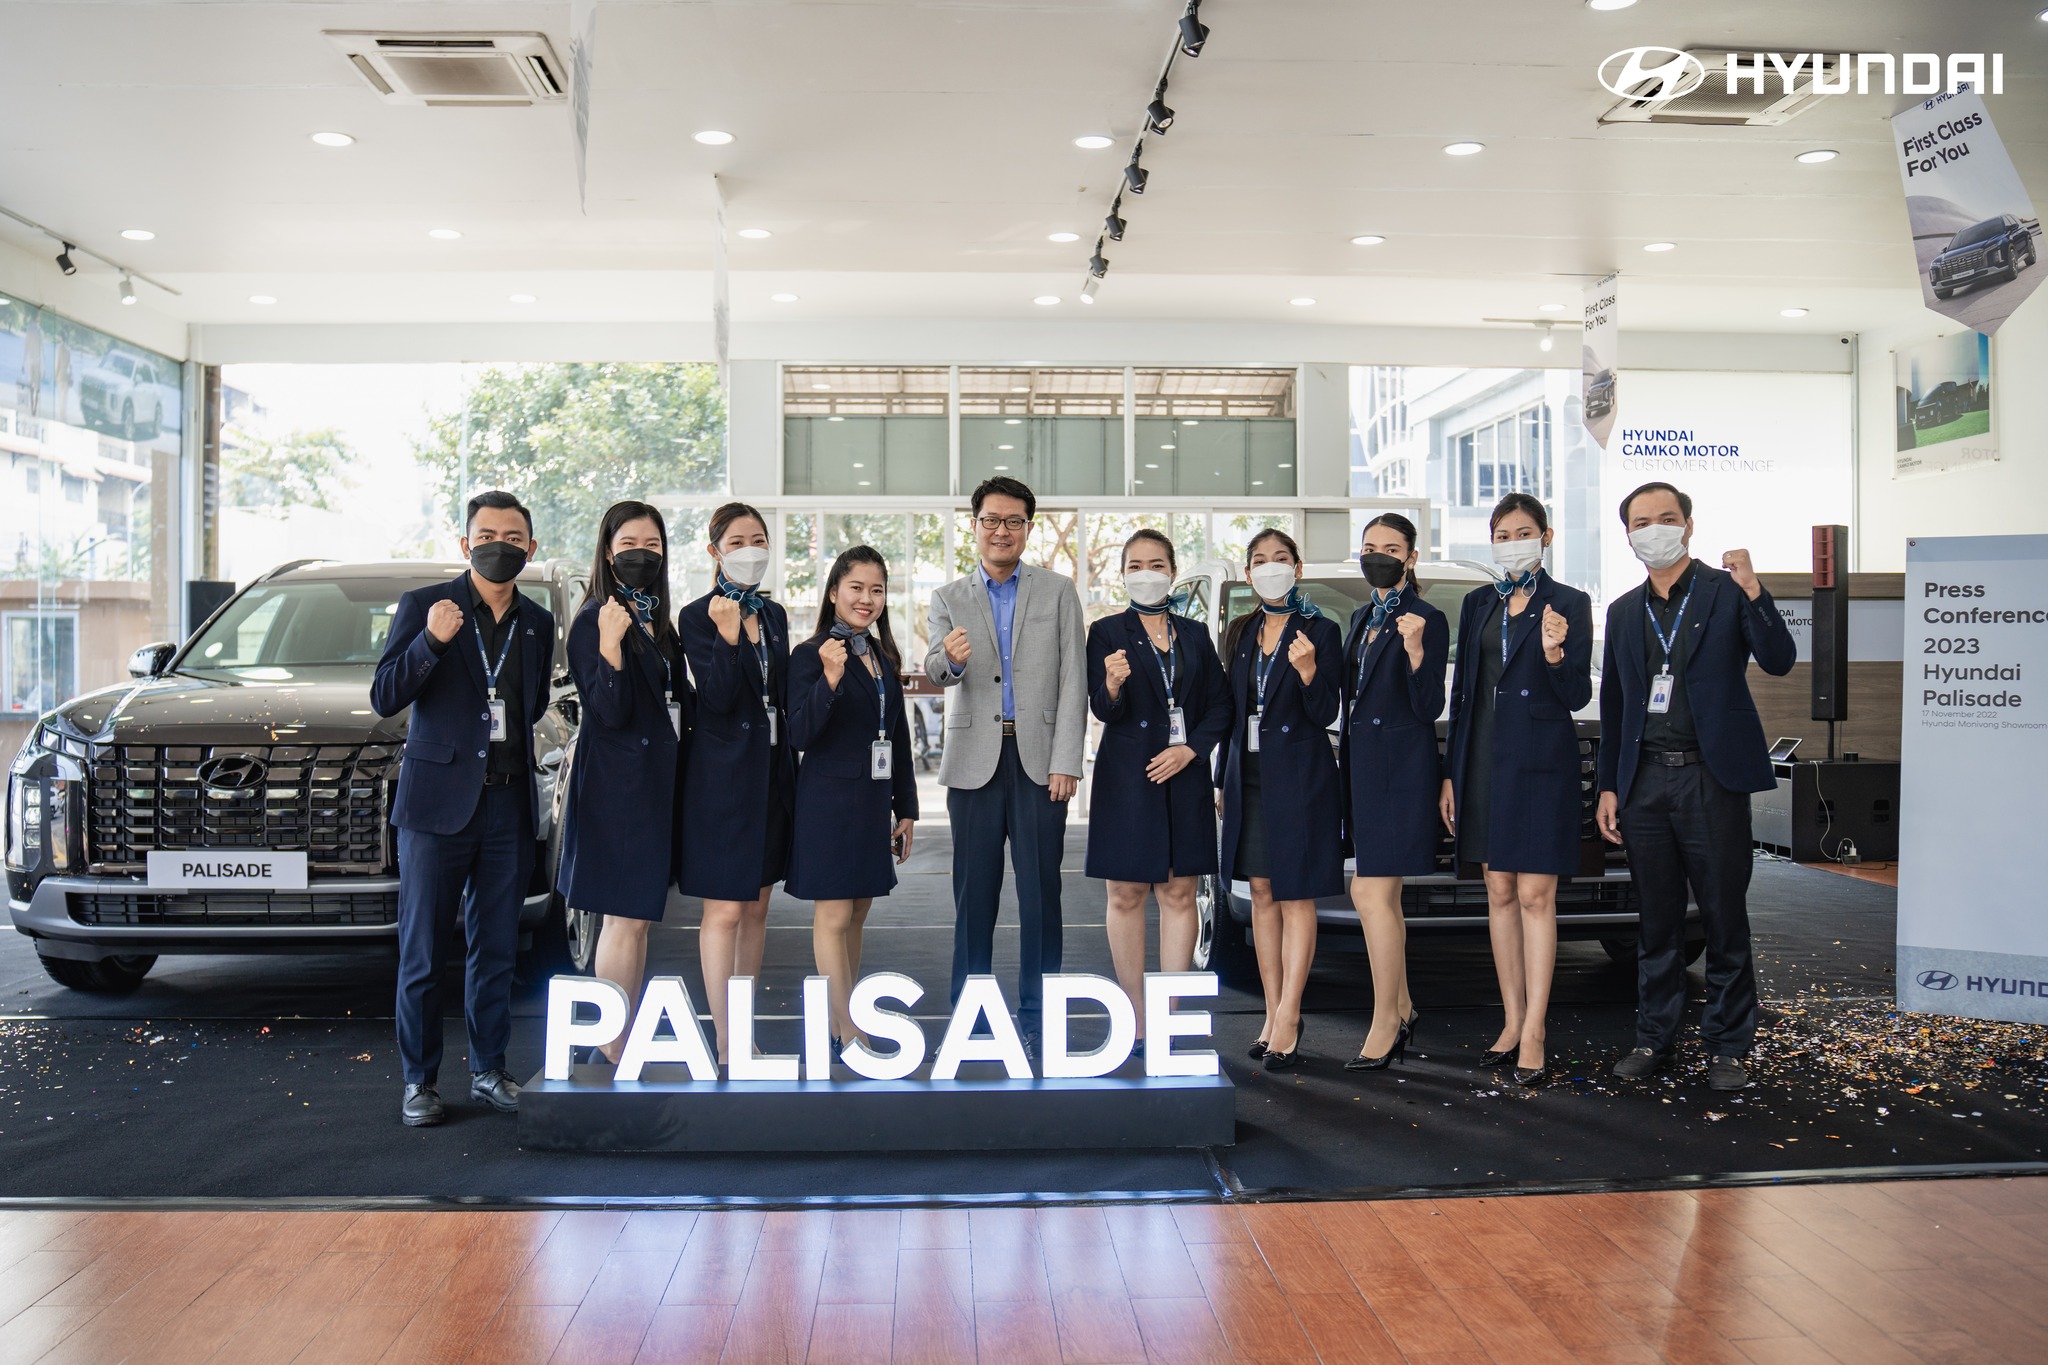 2023 Hyundai Paliasade Press Conference